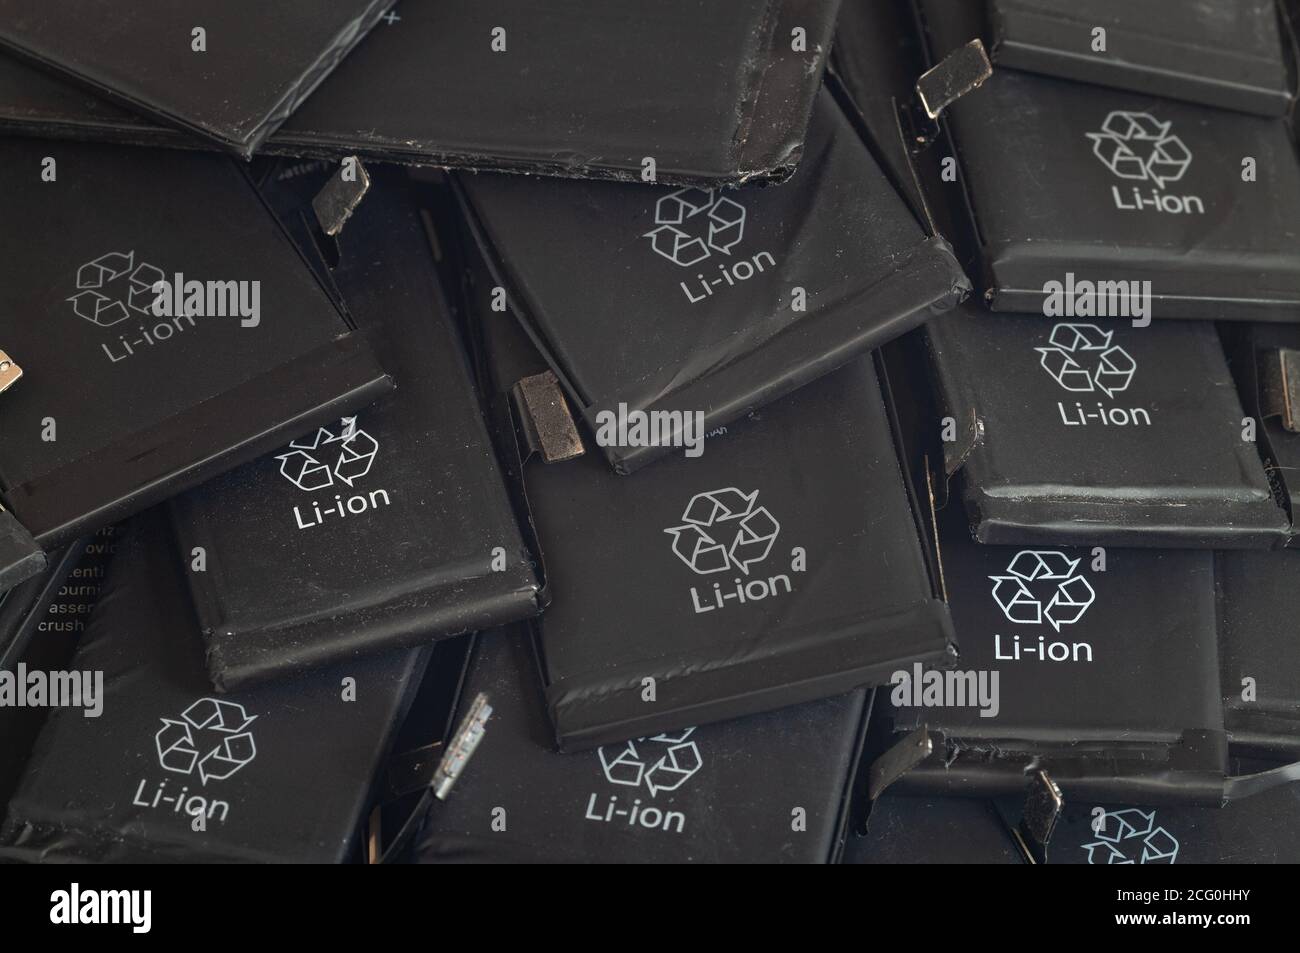 Gros plan des anciennes batteries lithium polymère de mobile préparation des téléphones pour le recyclage Banque D'Images